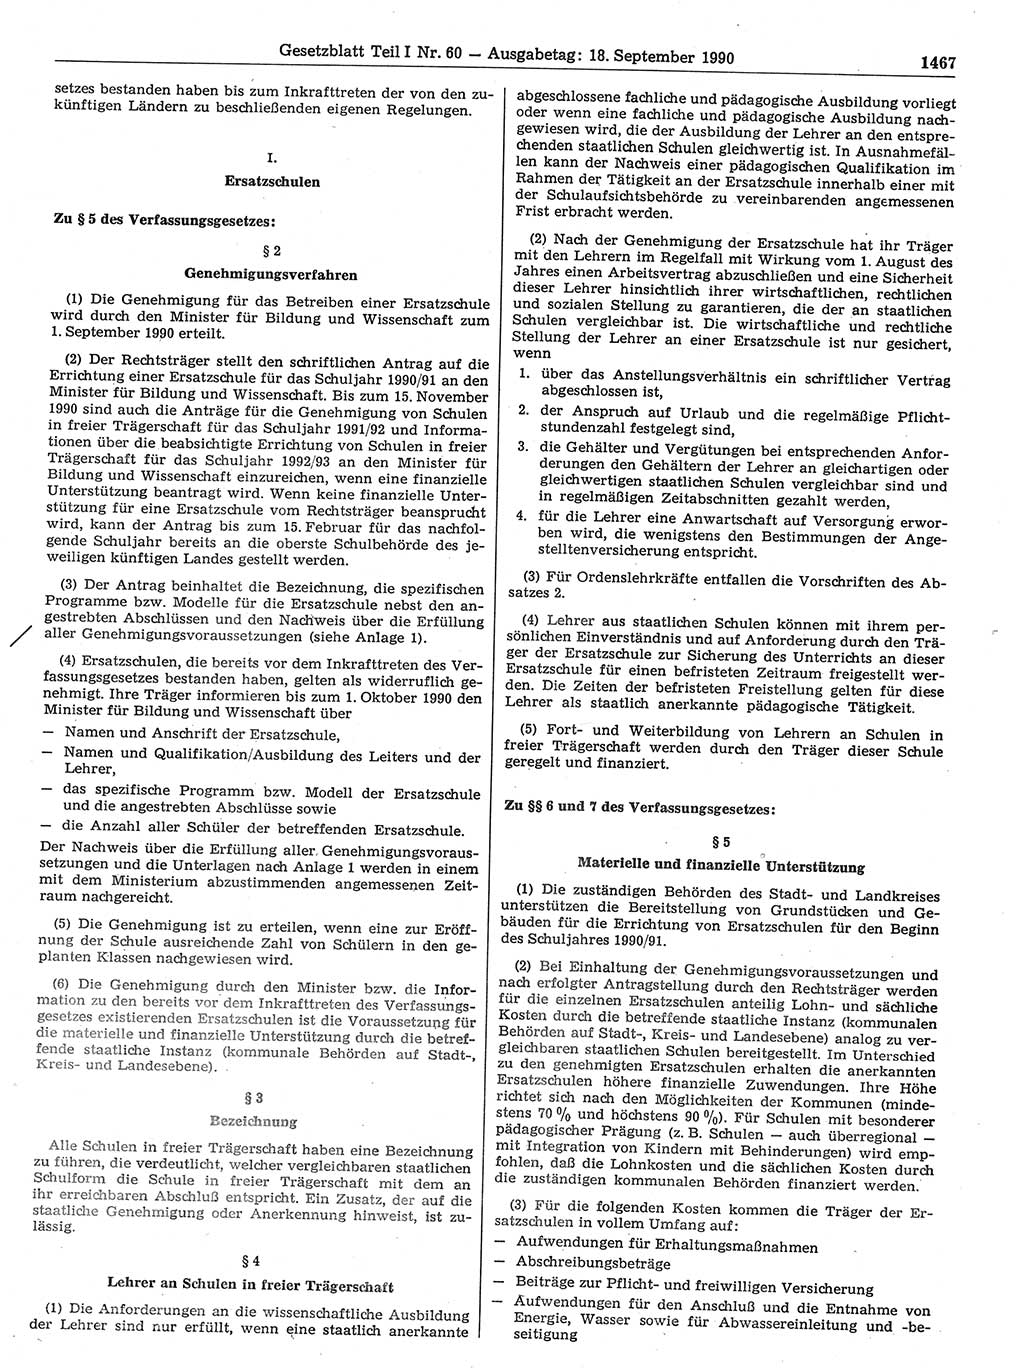 Gesetzblatt (GBl.) der Deutschen Demokratischen Republik (DDR) Teil Ⅰ 1990, Seite 1467 (GBl. DDR Ⅰ 1990, S. 1467)